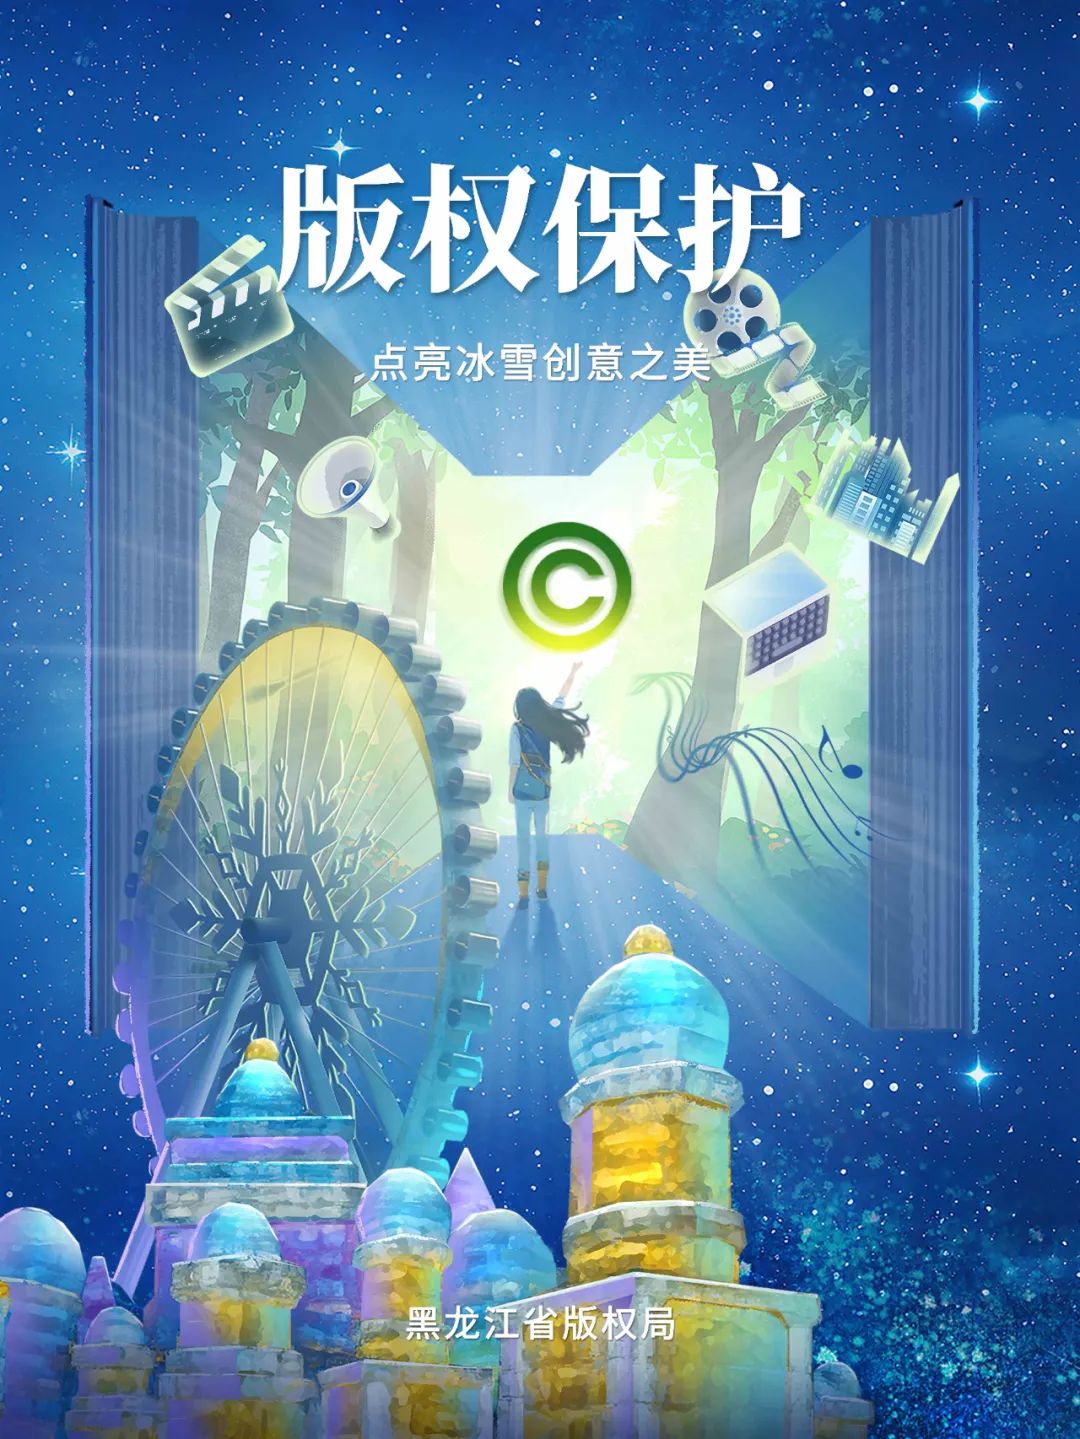 黑龙江省版权局发布2024年版权宣传活动公益海报和宣传短片